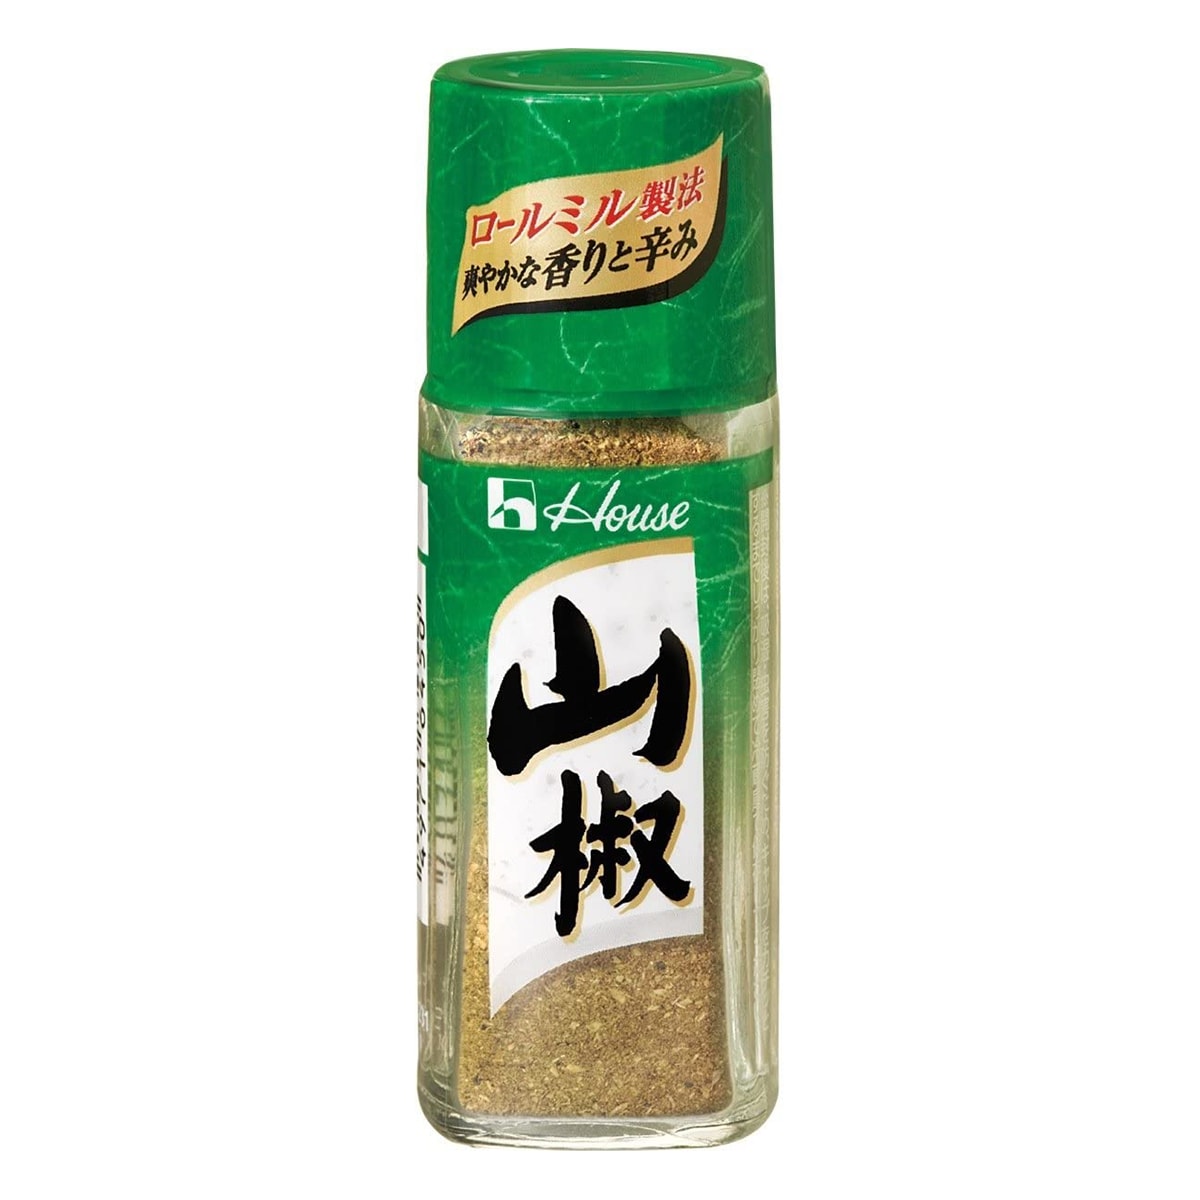 Buy House Foods Sansho Pepper - 12 gm